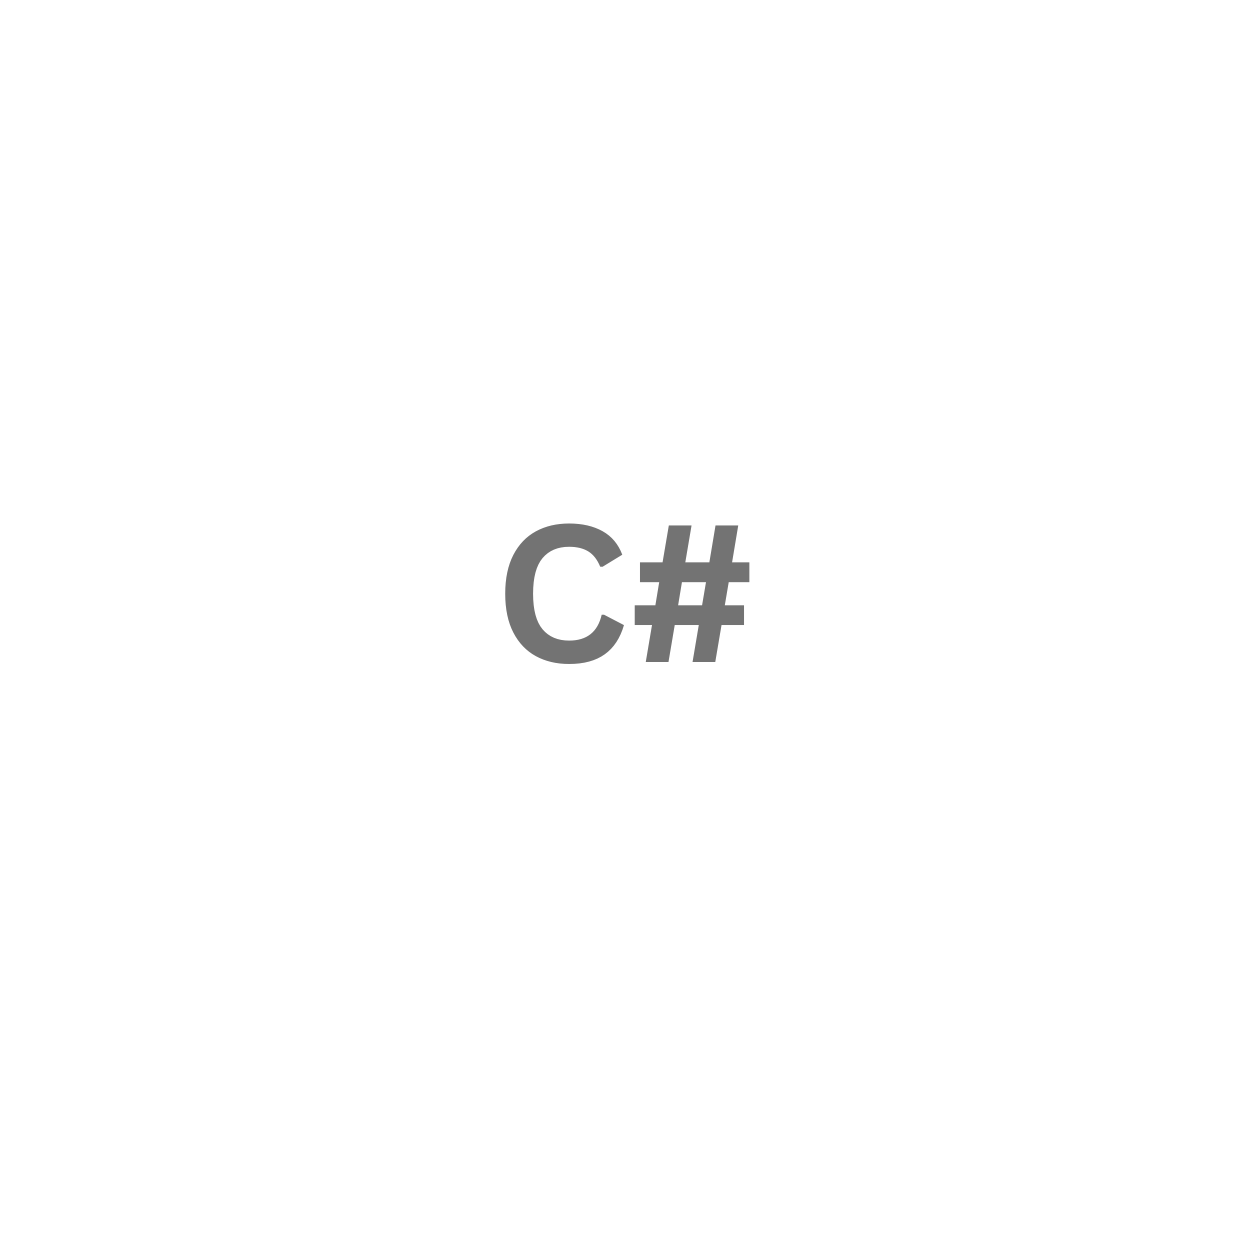 C#C#